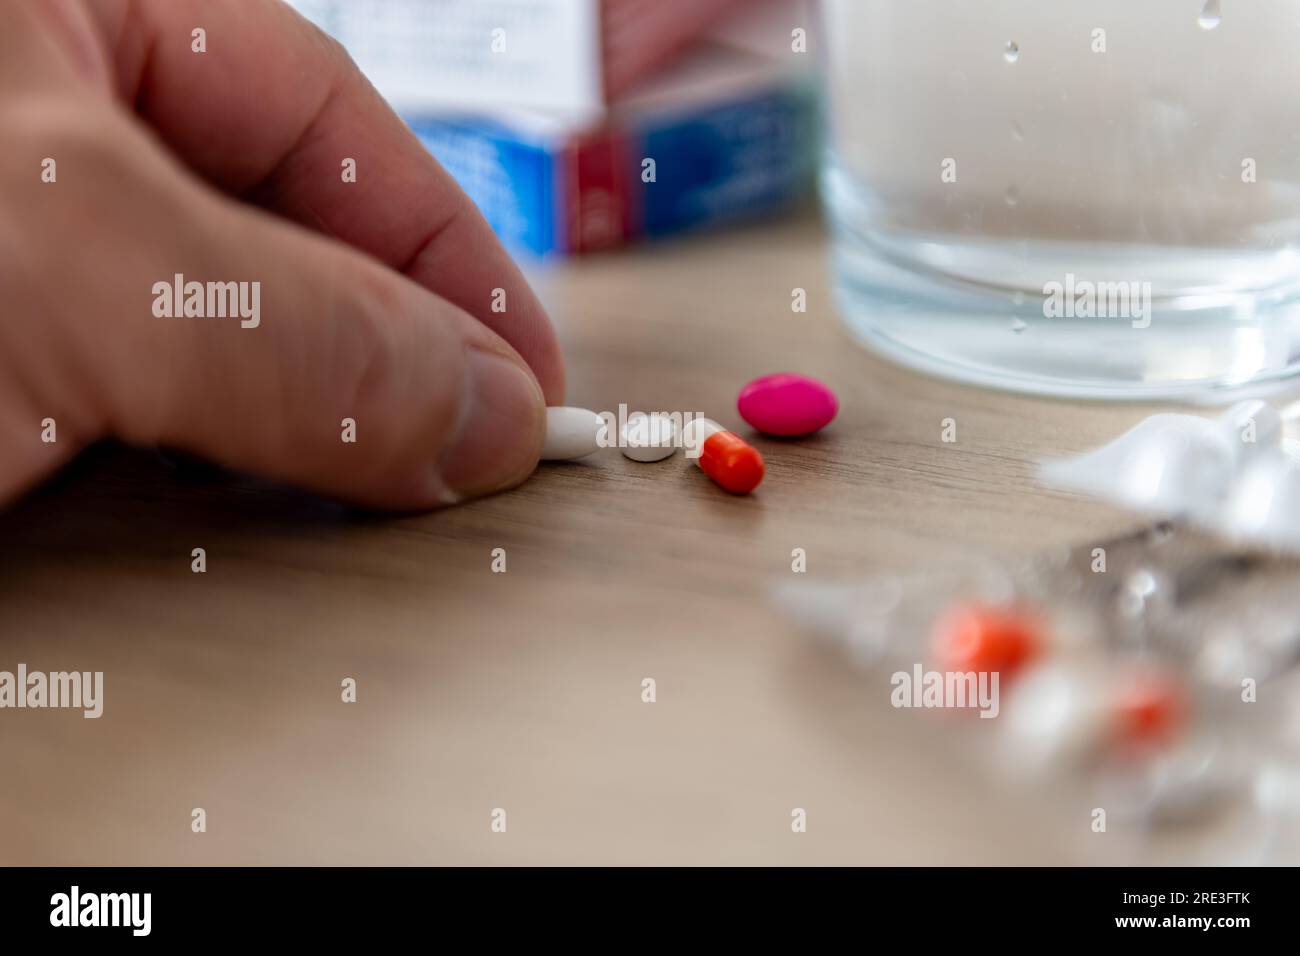 Eine Person, die verschreibungspflichtige Medikamente einnimmt, nimmt eine Tablette auf einer Arbeitsplatte ab. Stockfoto